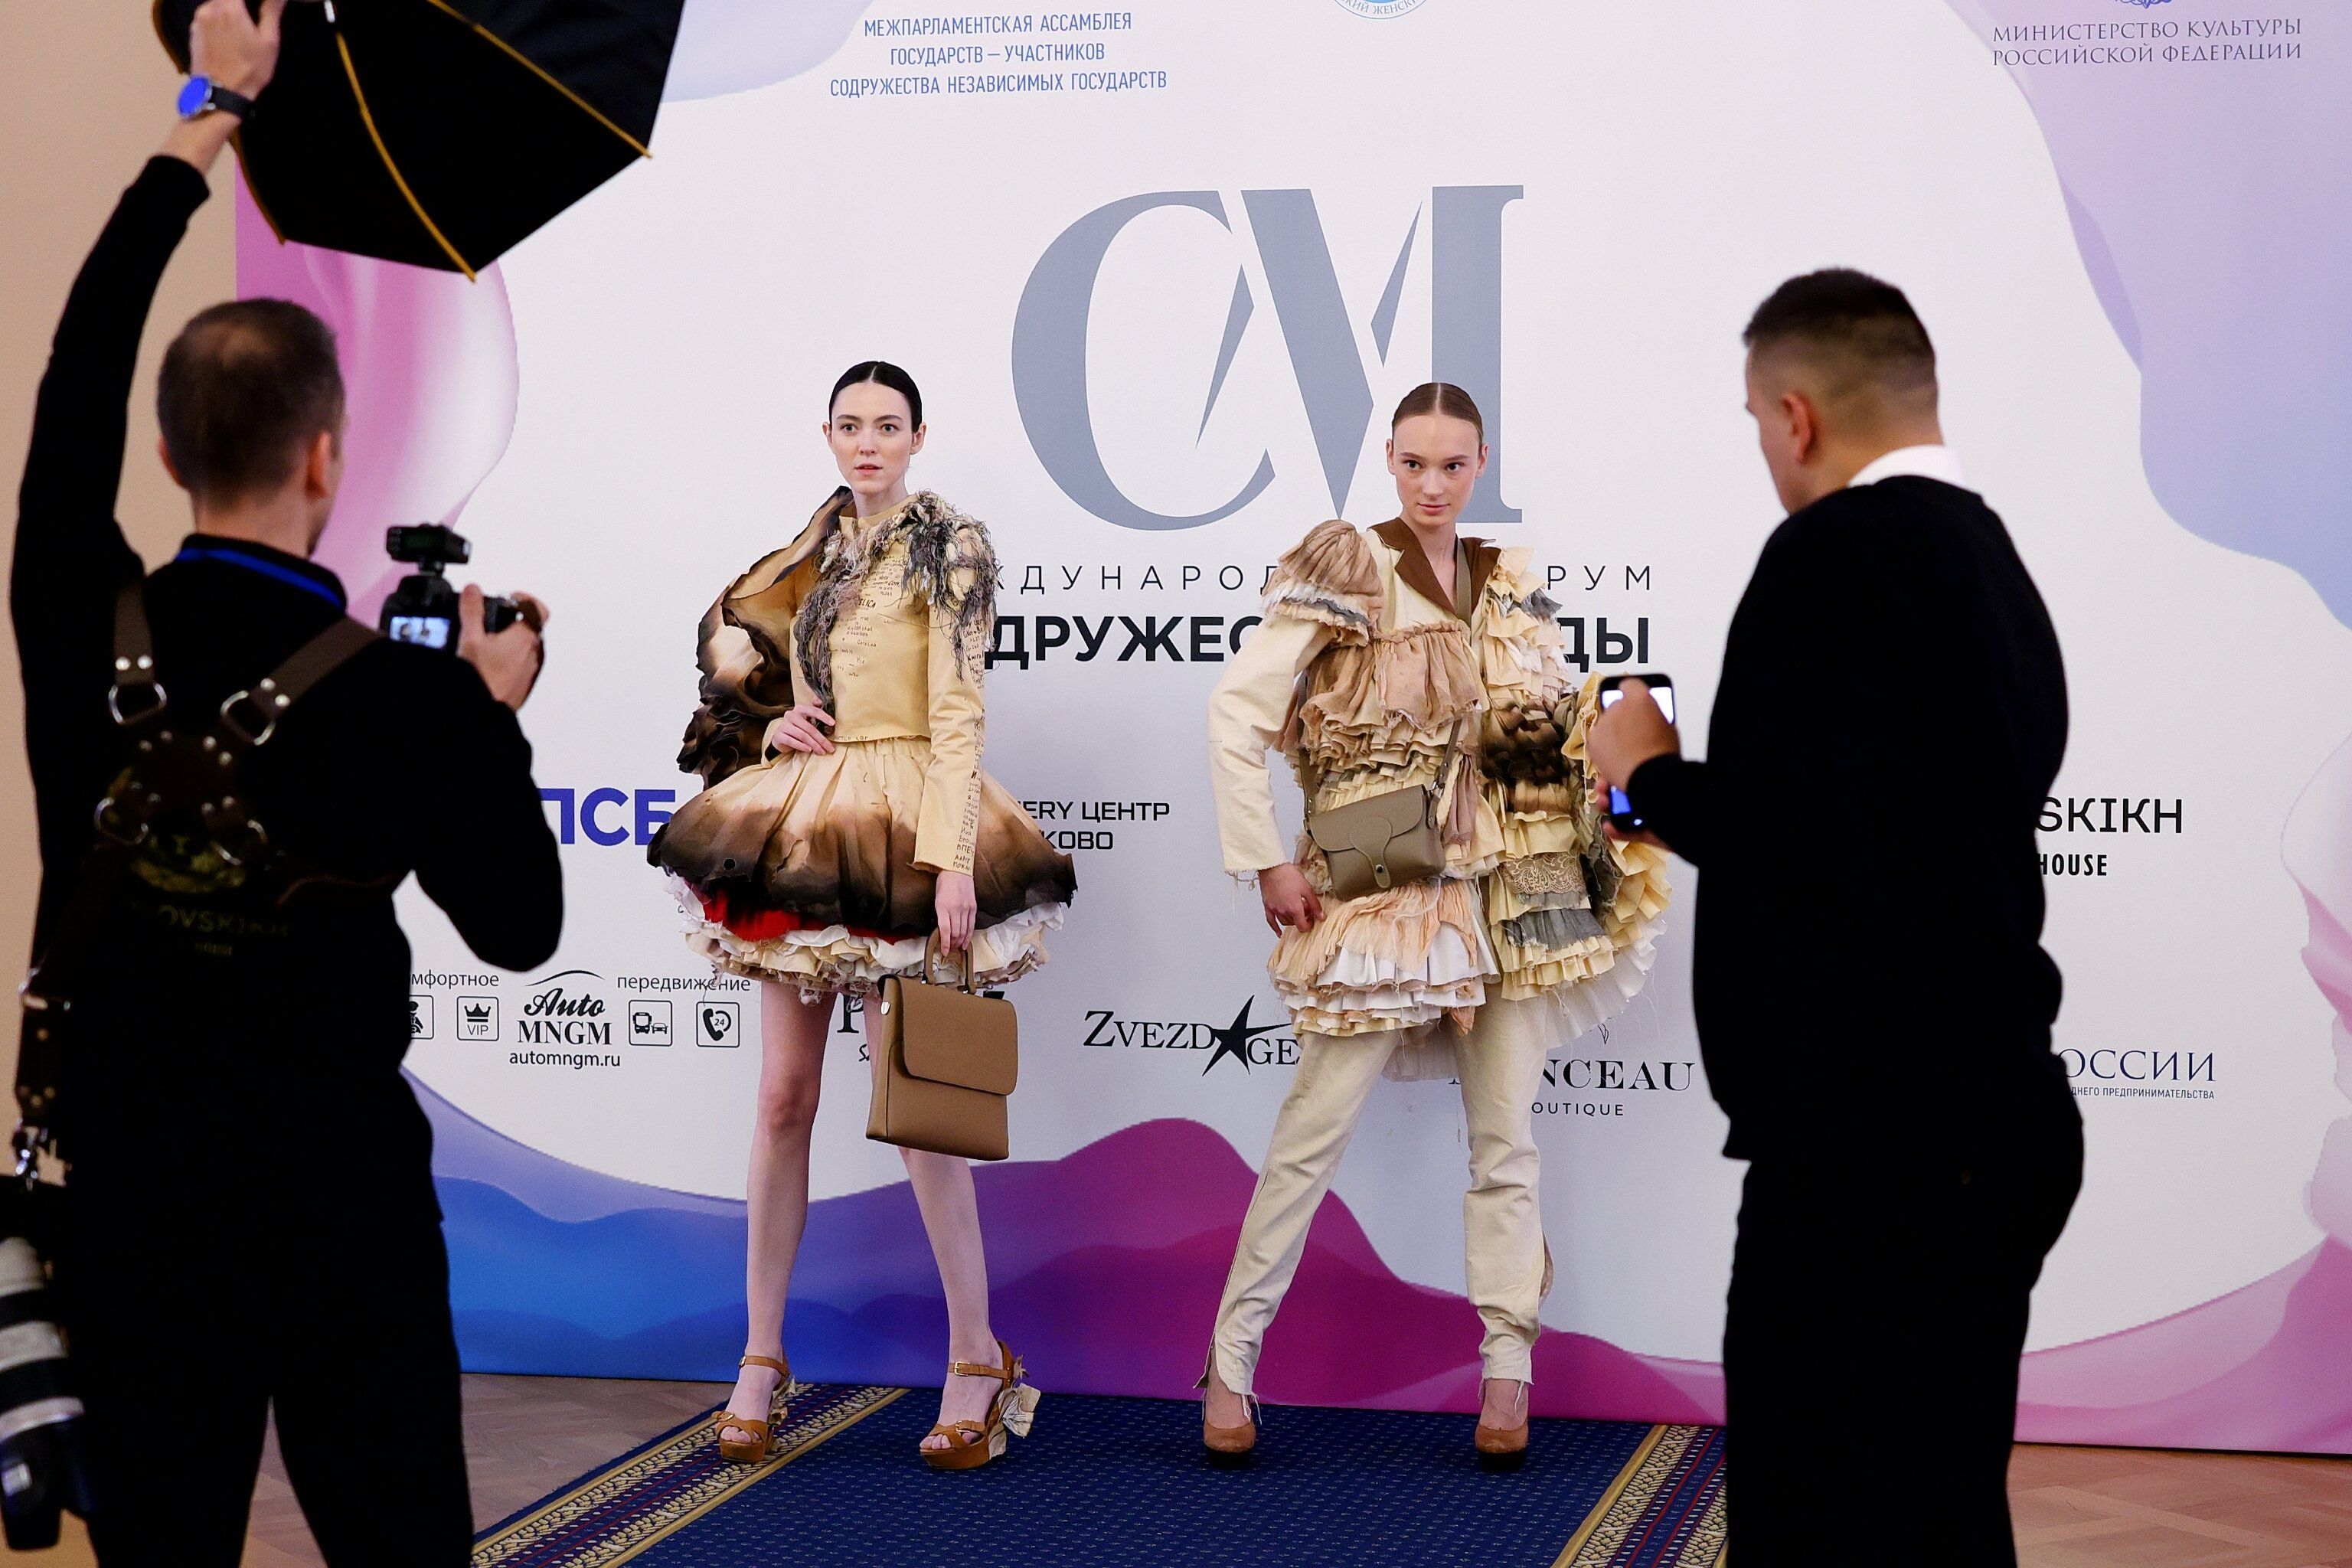  II‑ой Международный форум «Содружество моды» в Таврическом дворце